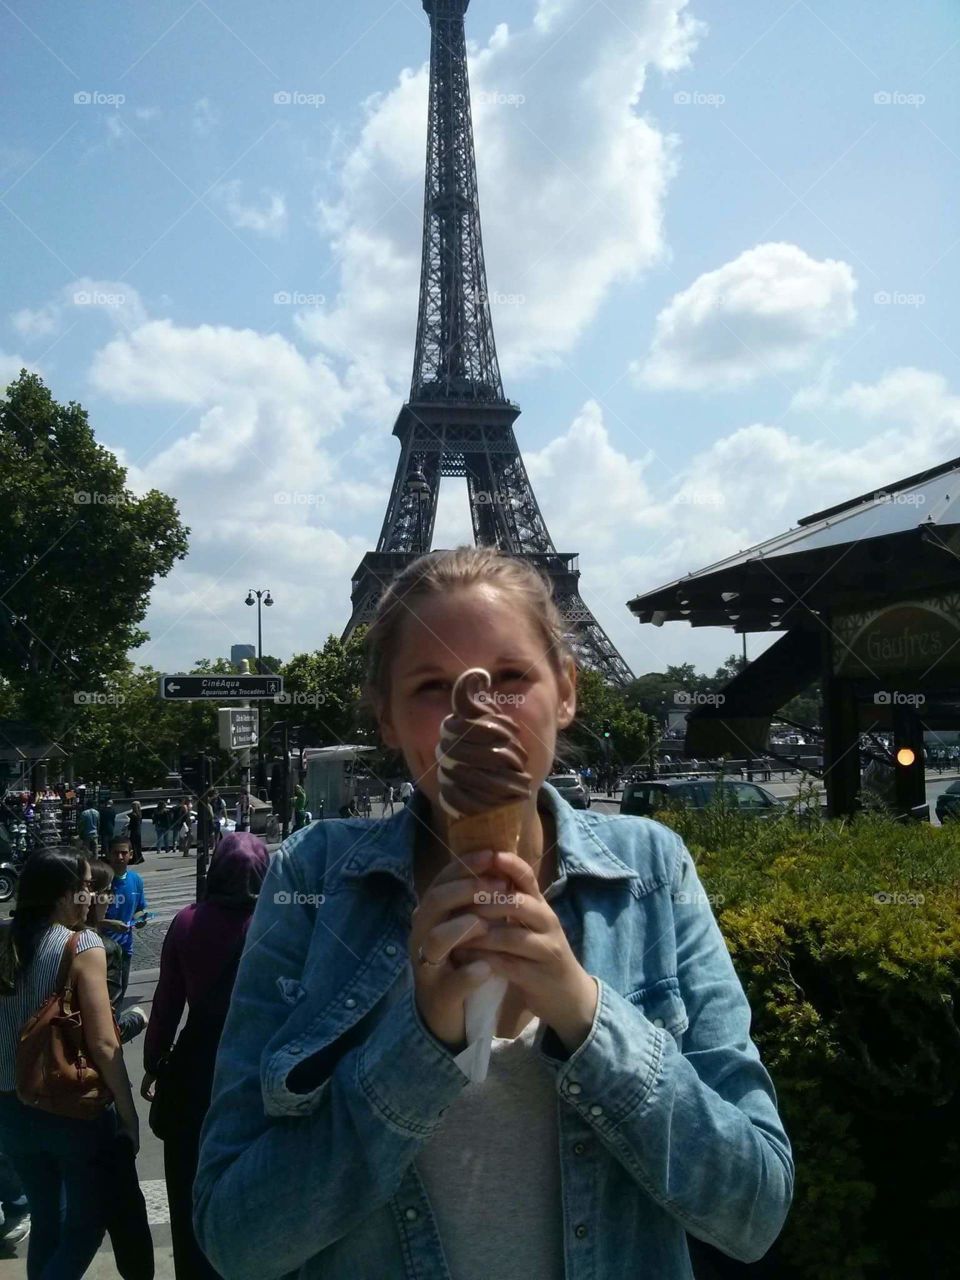 Paris' ice cream